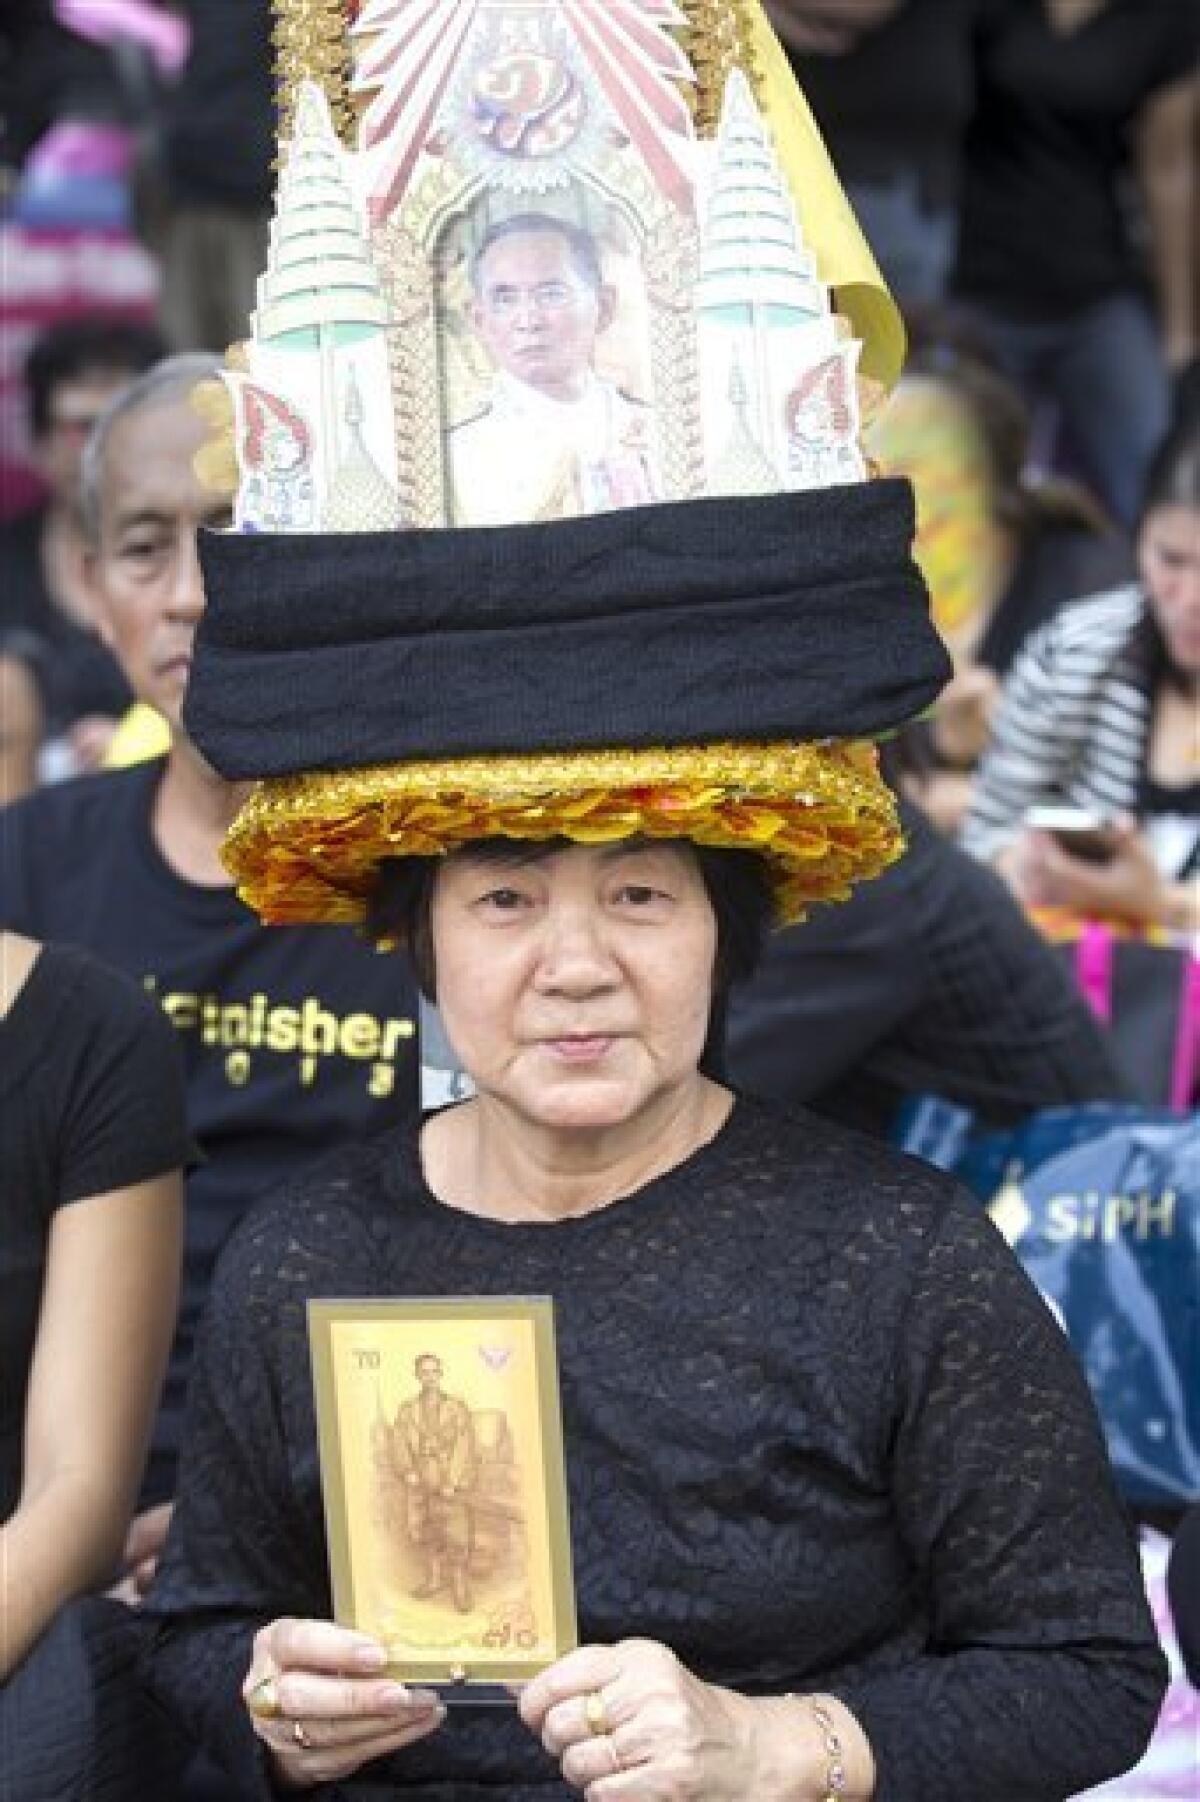 El príncipe heredero de Tailandia, Vajiralongkorn, podría ser proclamado rey a partir del viernes, ocho días después del fallecimiento del monarca Bhumibol Adulyadej, anunció hoy el primer ministro, el general Prayut Chan-ocha.